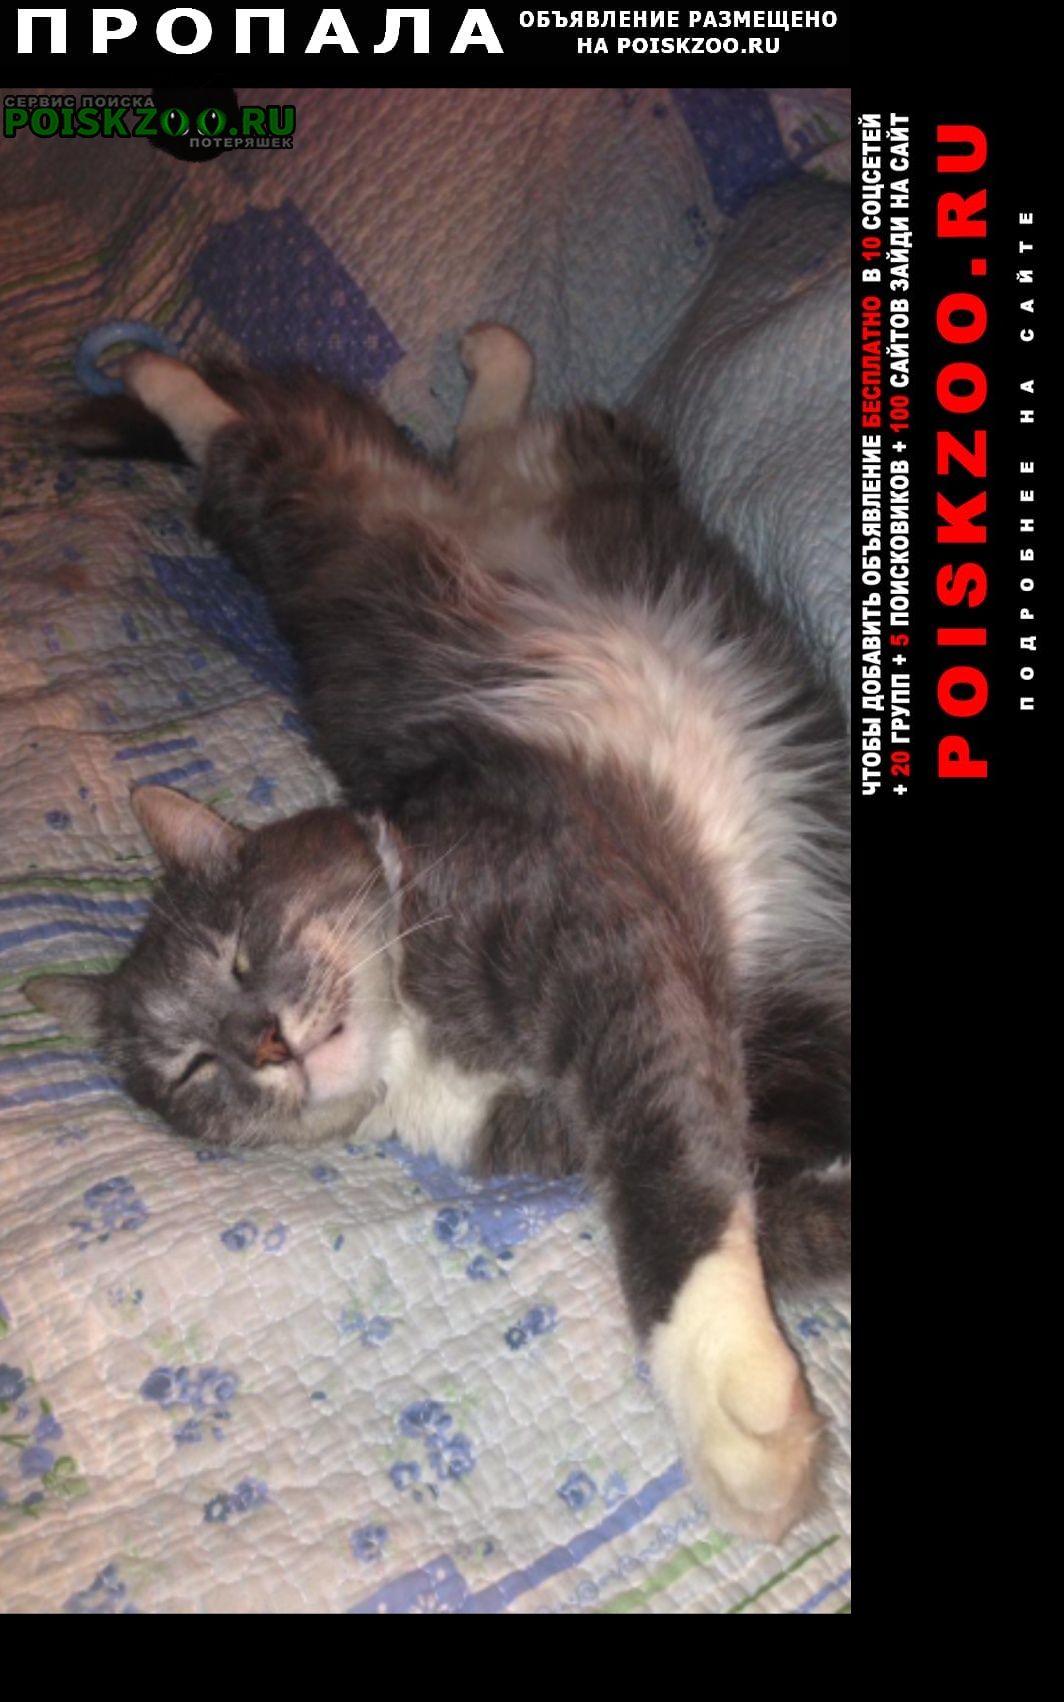 Ростов-на-Дону Пропал кот серый пушистый, очень крупный